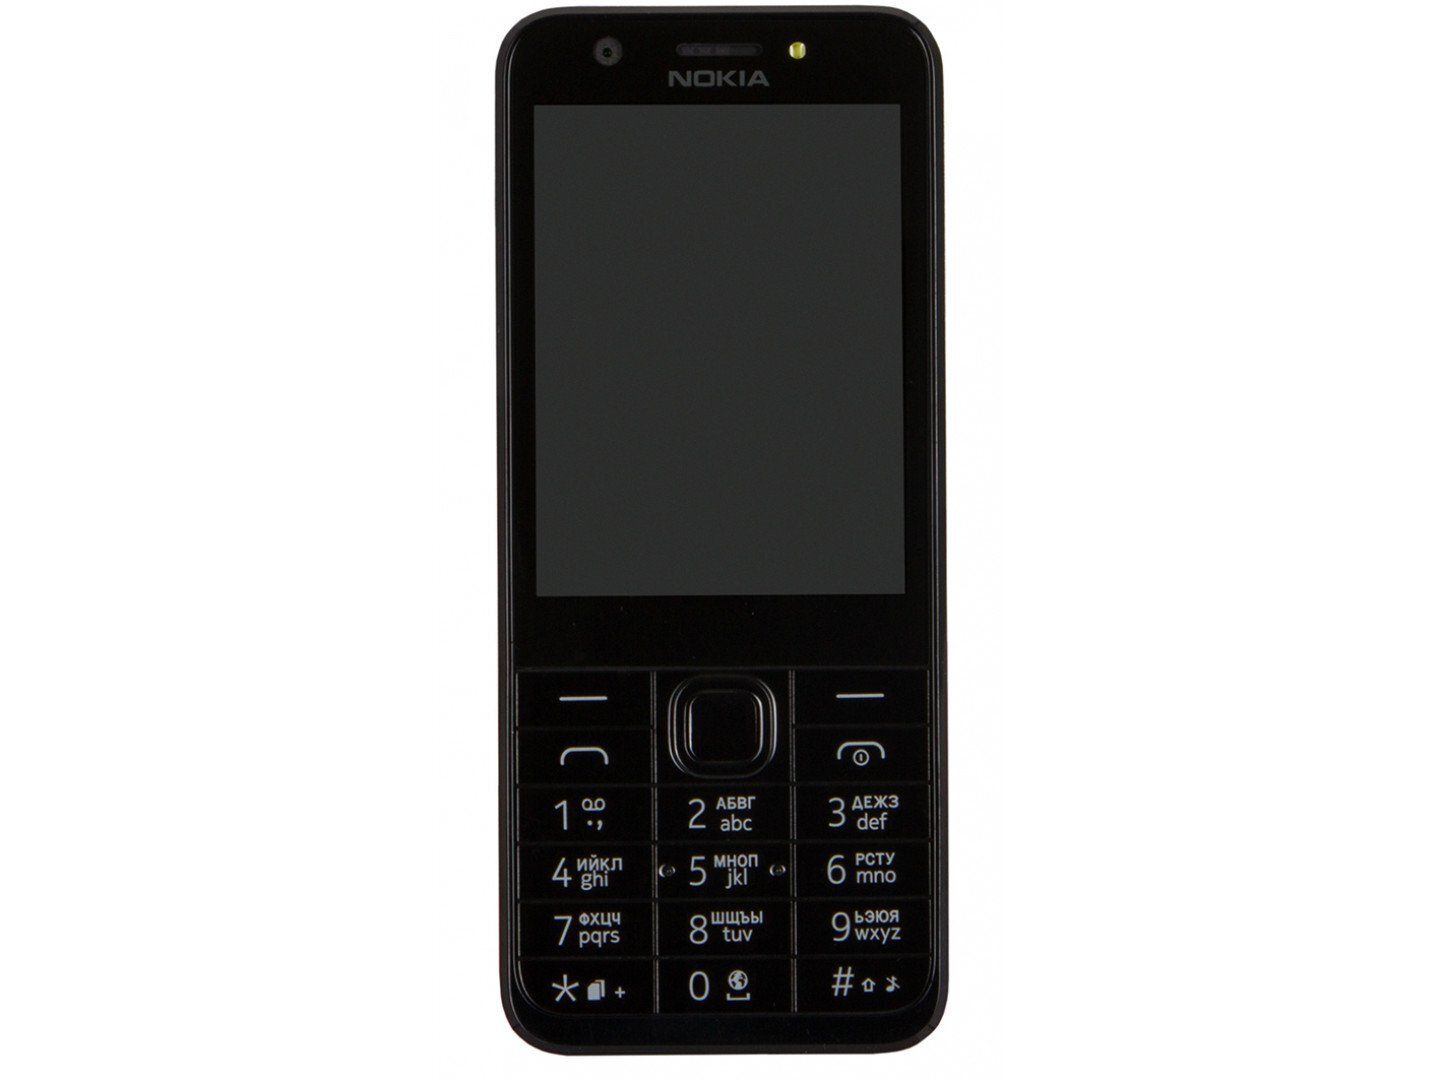 Картинка телефона нокиа. Телефон сотовый Nokia 230 Dual SIM. Nokia 230 Dual SIM Dark Silver. Nokia 230 Dual SIM, Black Silver. Nokia 206 Dual SIM Black.